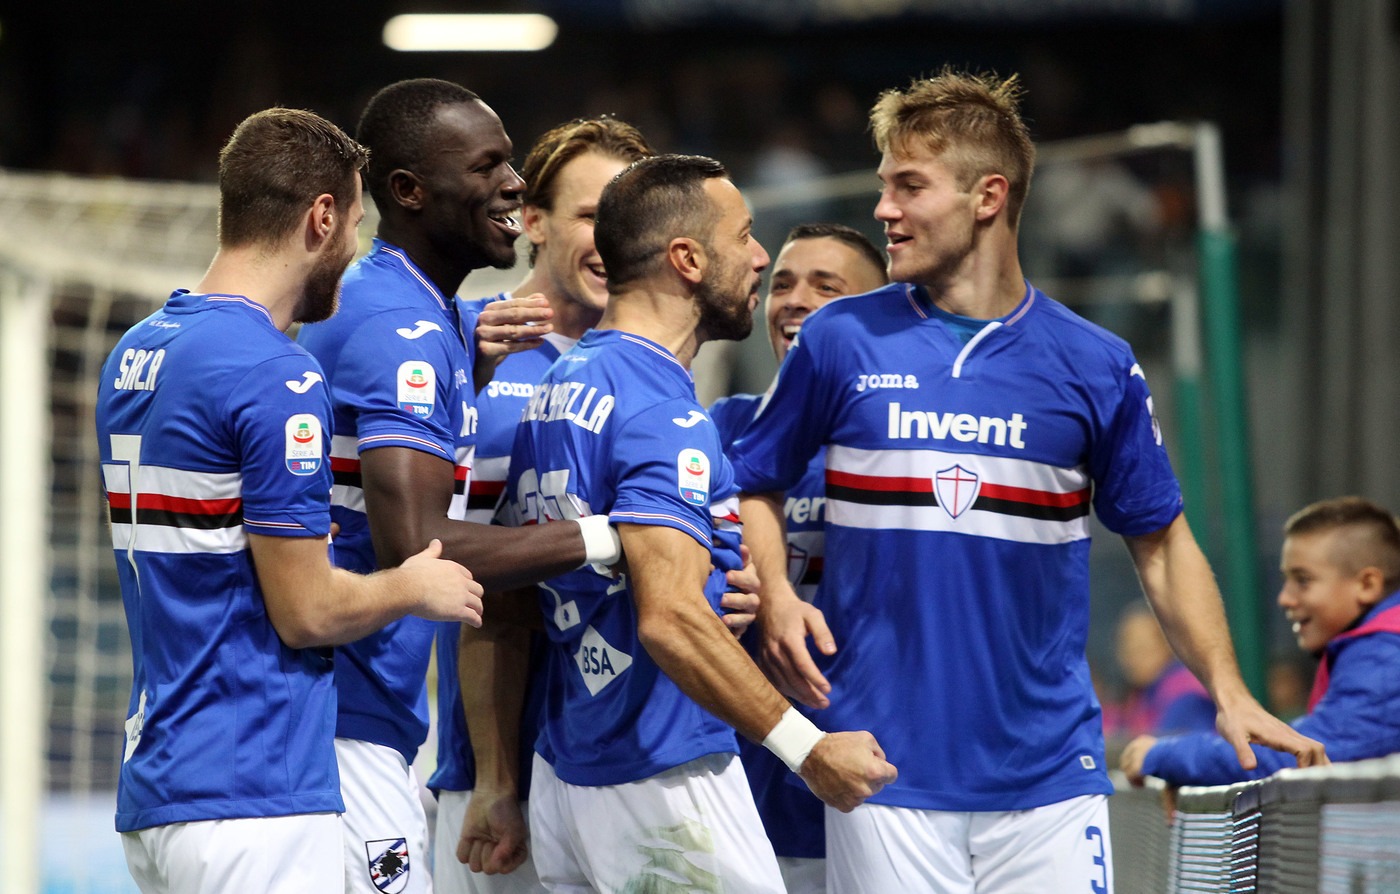 Serie A, Sampdoria-Frosinone domenica 10 febbraio: analisi e pronostico della 23ma giornata del campionato italiano